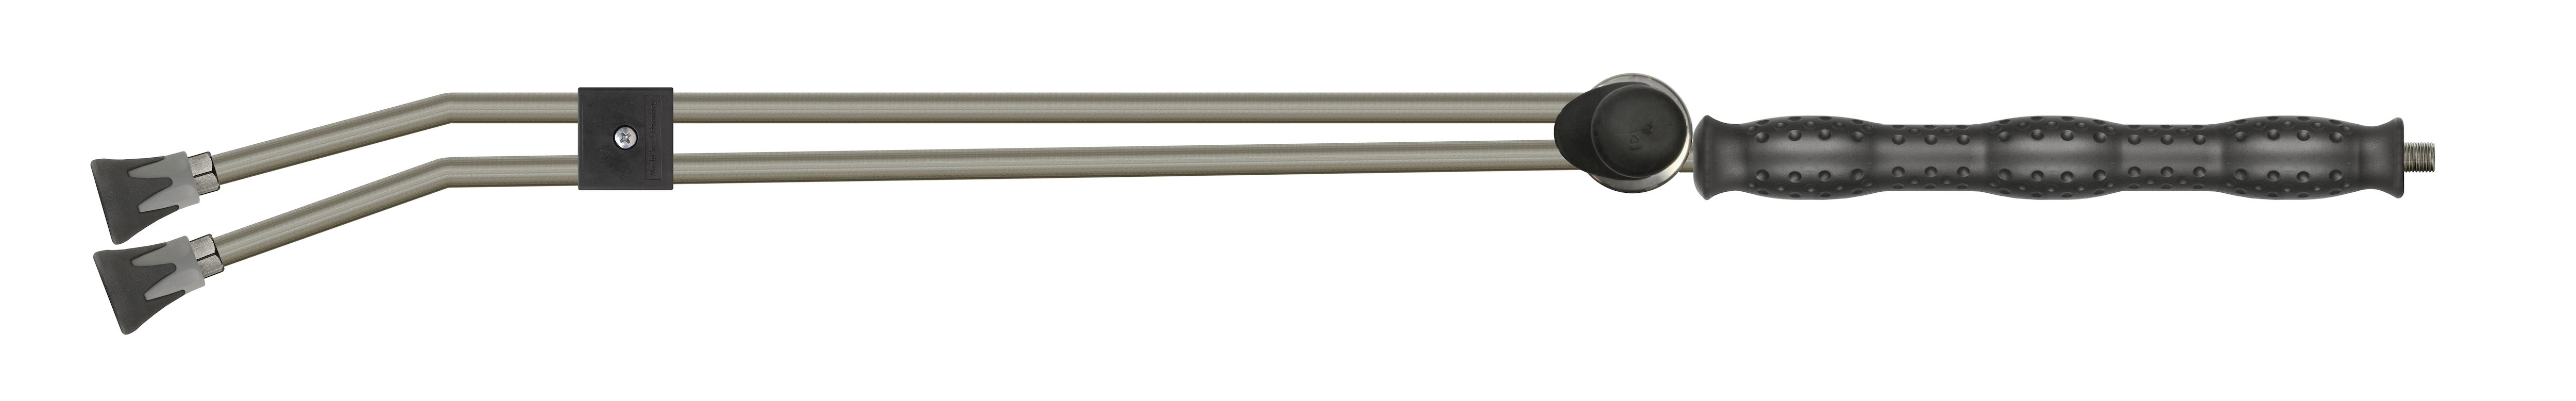 Double-lance Inox, robinet latéral ST-54, et protège-buse ST-10, livrée sans buse Haute Pression